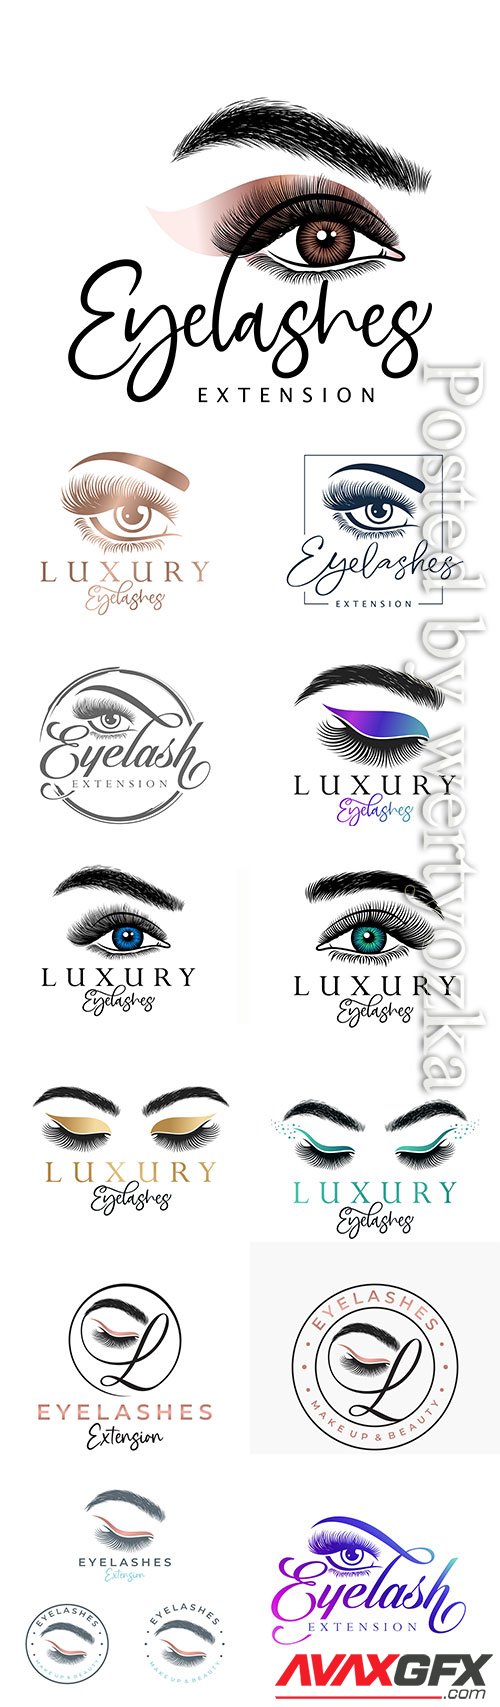 Luxury beauty eyelash logo design